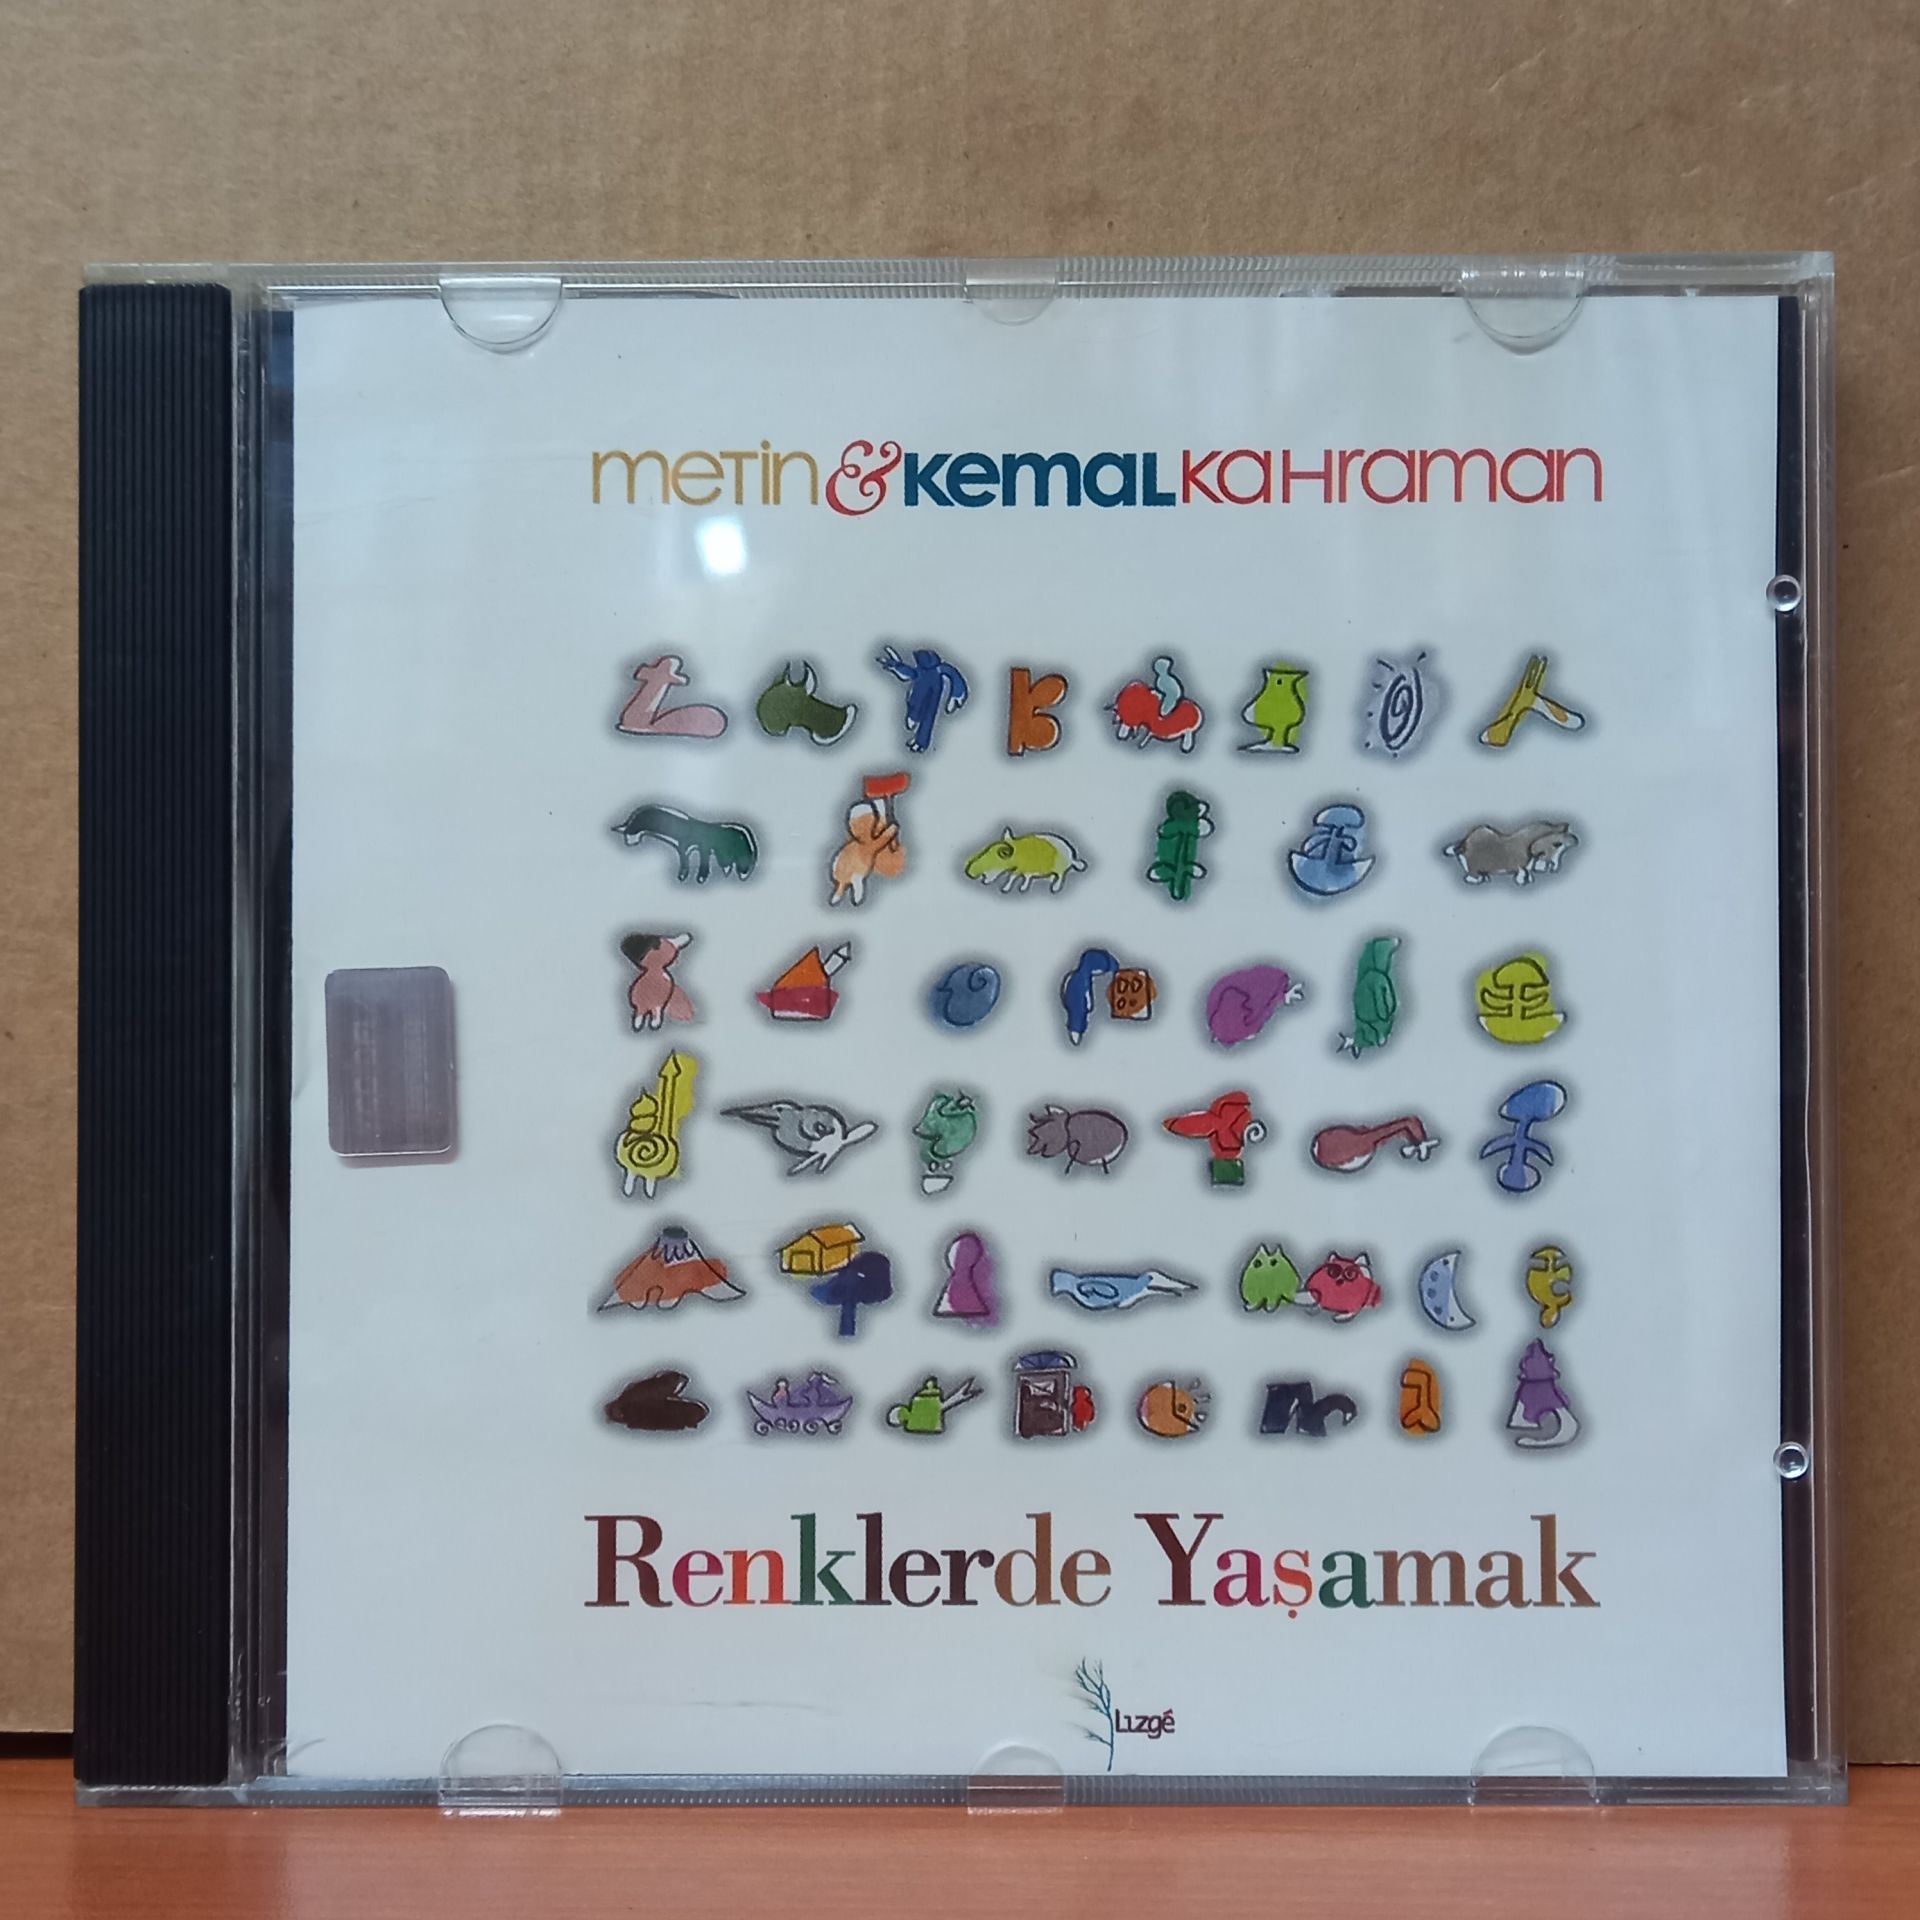 METİN & KEMAL KAHRAMAN - RENKLERDE YAŞAMAK - CD 2.EL